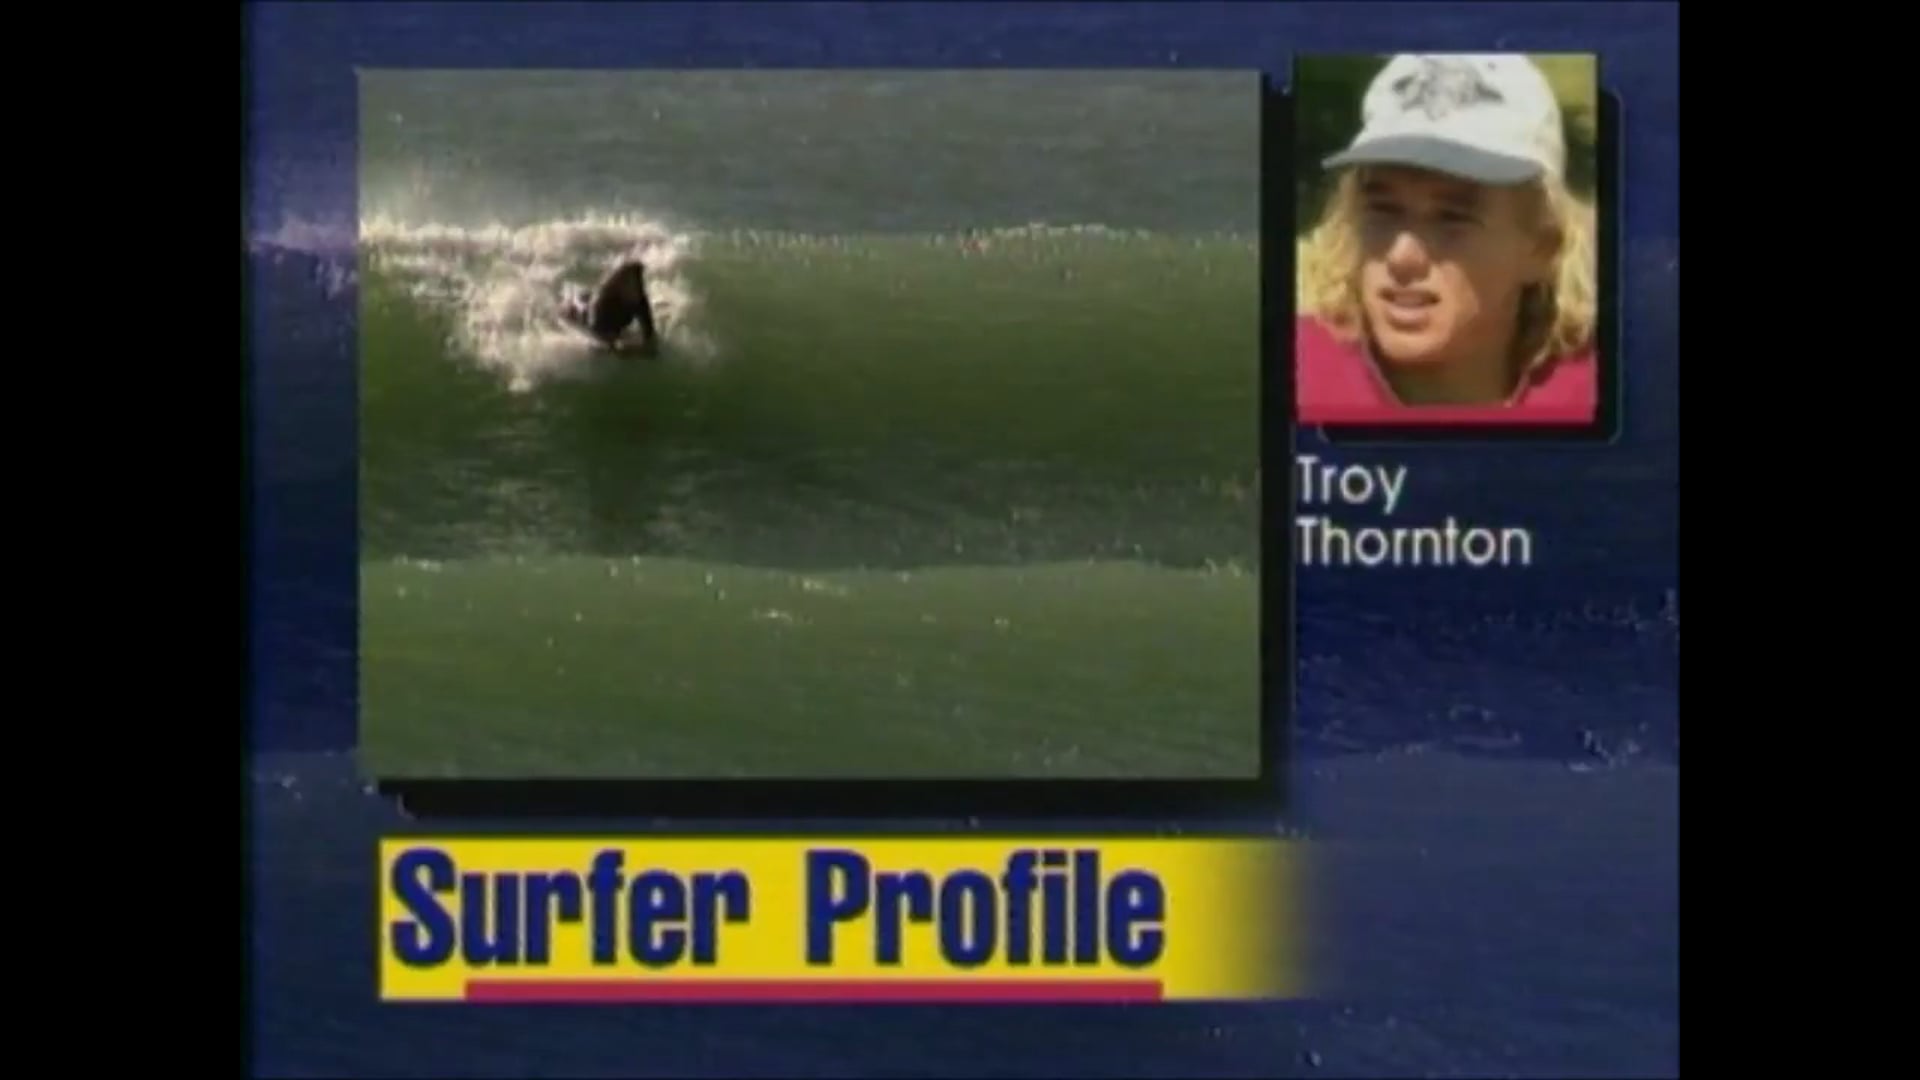 Troy Thornton – 1996